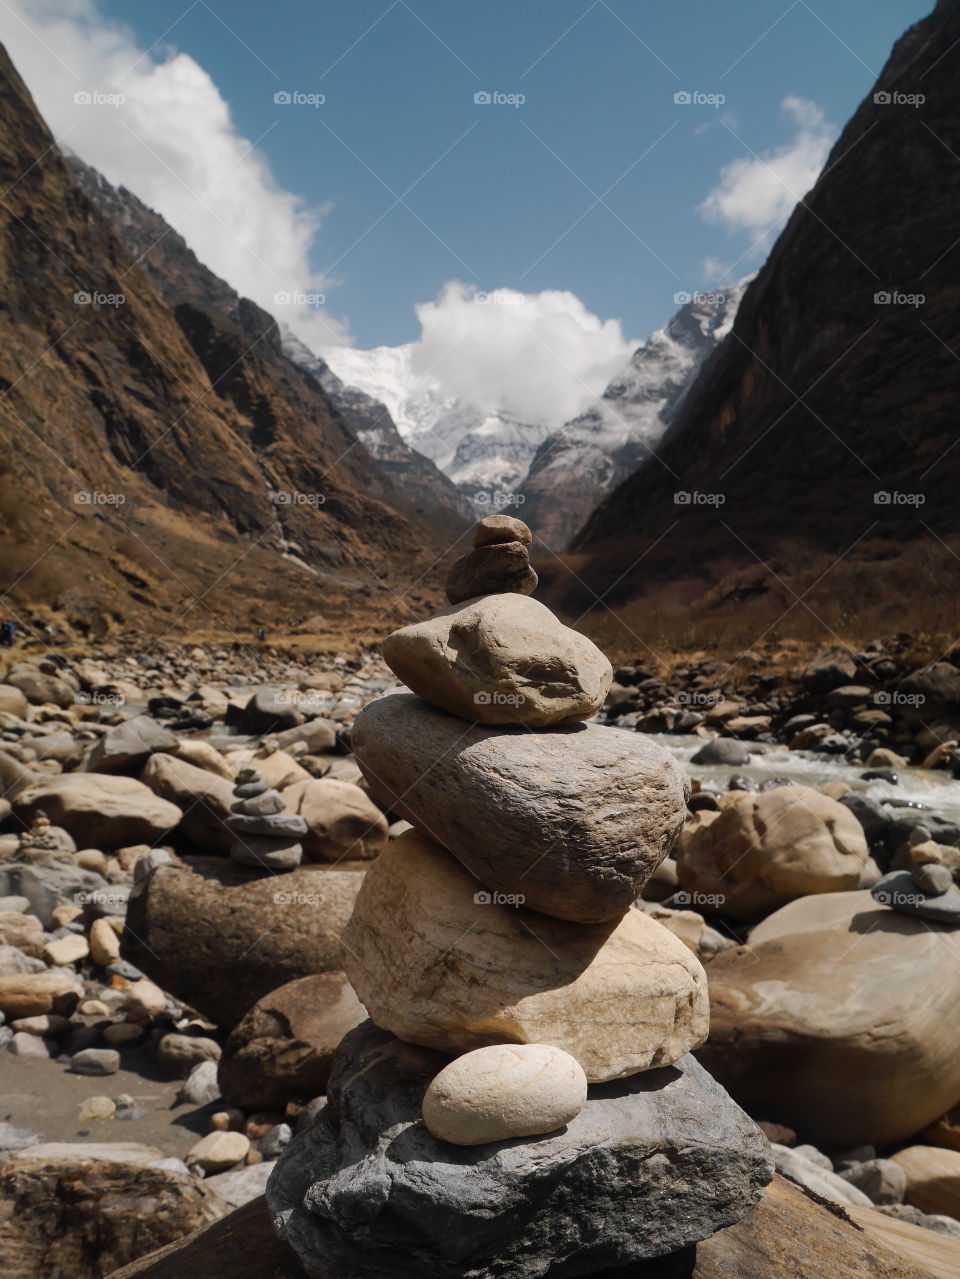 Nepal Himalayans